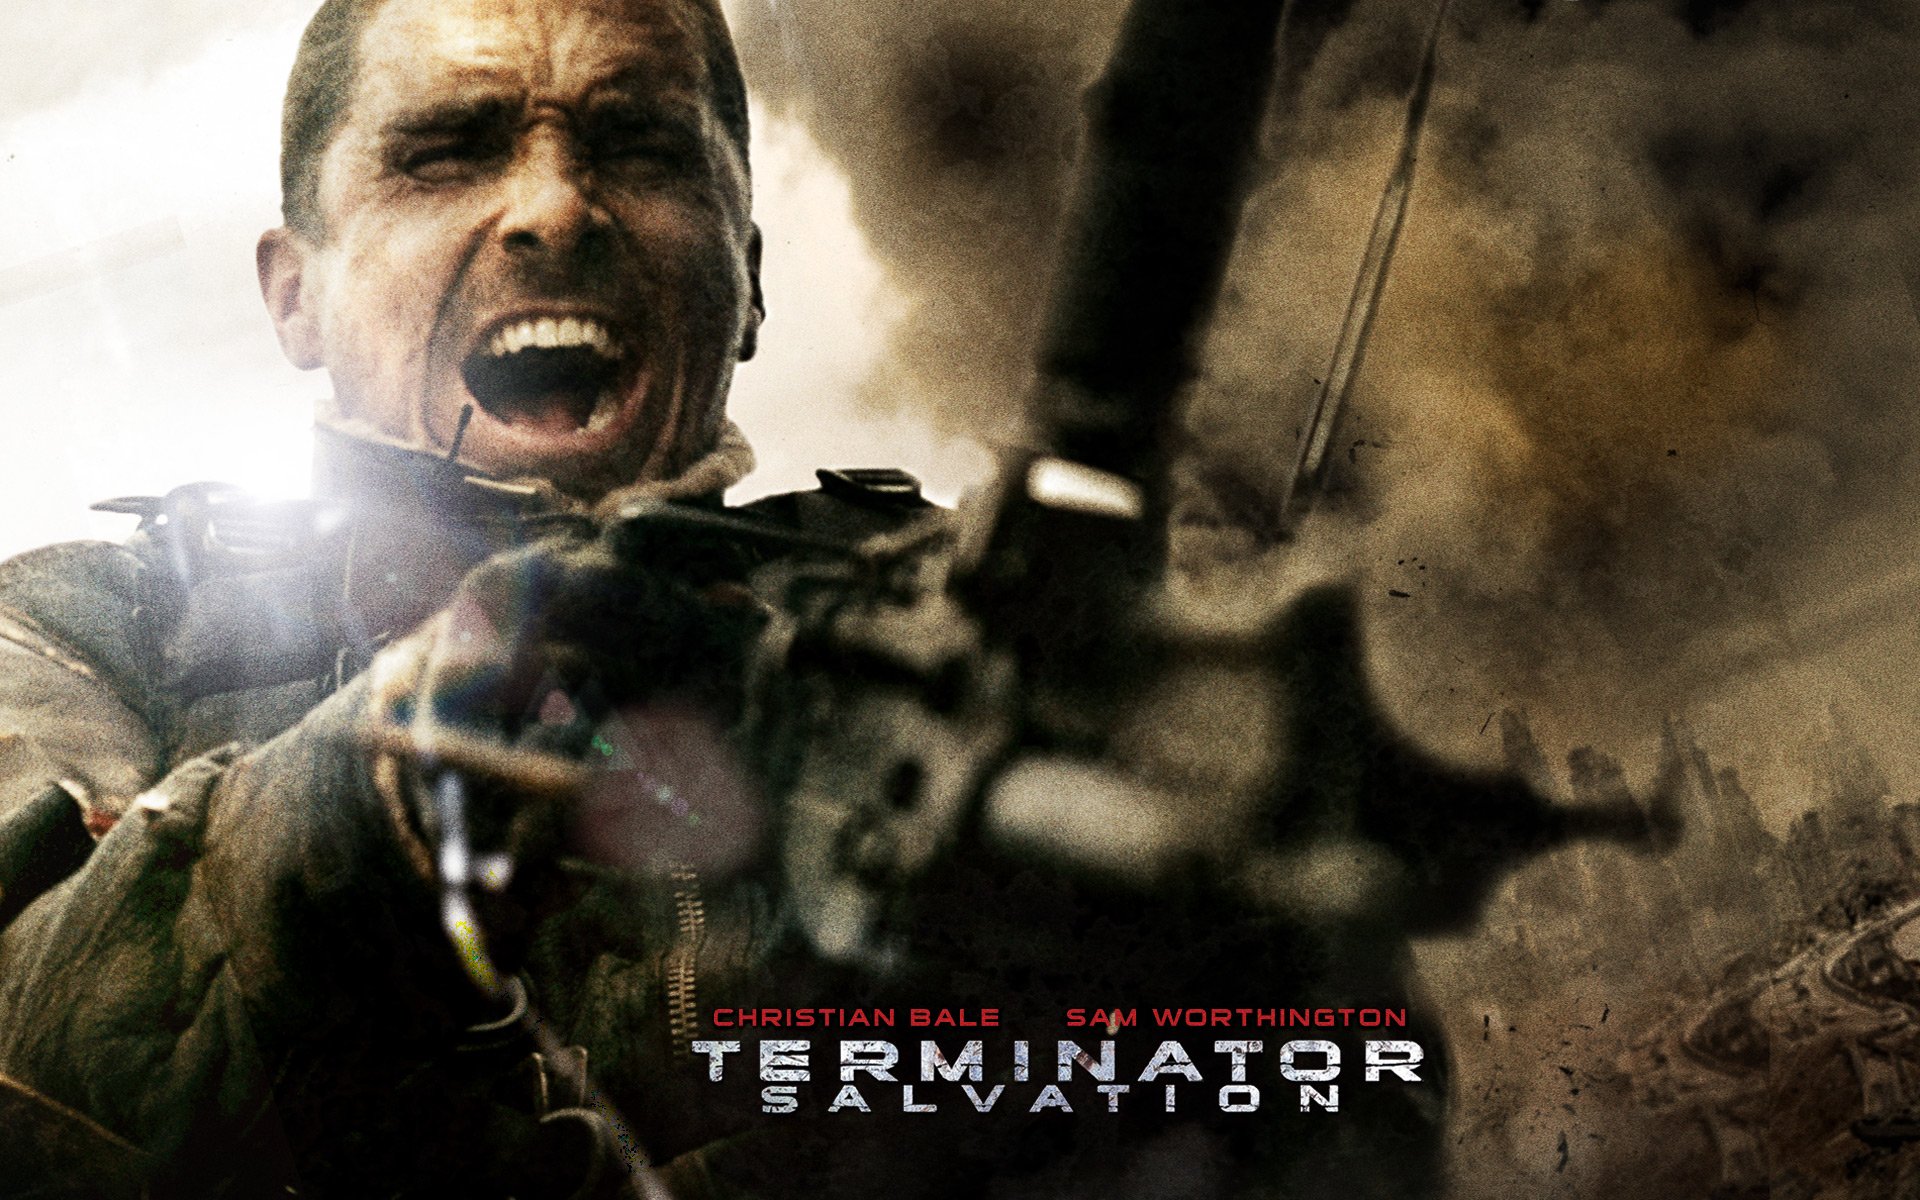 壁纸1920x1200终结者 救世主 Terminator Salvation 电影壁纸 Terminator Salvation 终结者4壁纸 《终结者救世主 Terminator Salvation 》壁纸 《终结者救世主 Terminator Salvation 》图片 《终结者救世主 Terminator Salvation 》素材 影视壁纸 影视图库 影视图片素材桌面壁纸